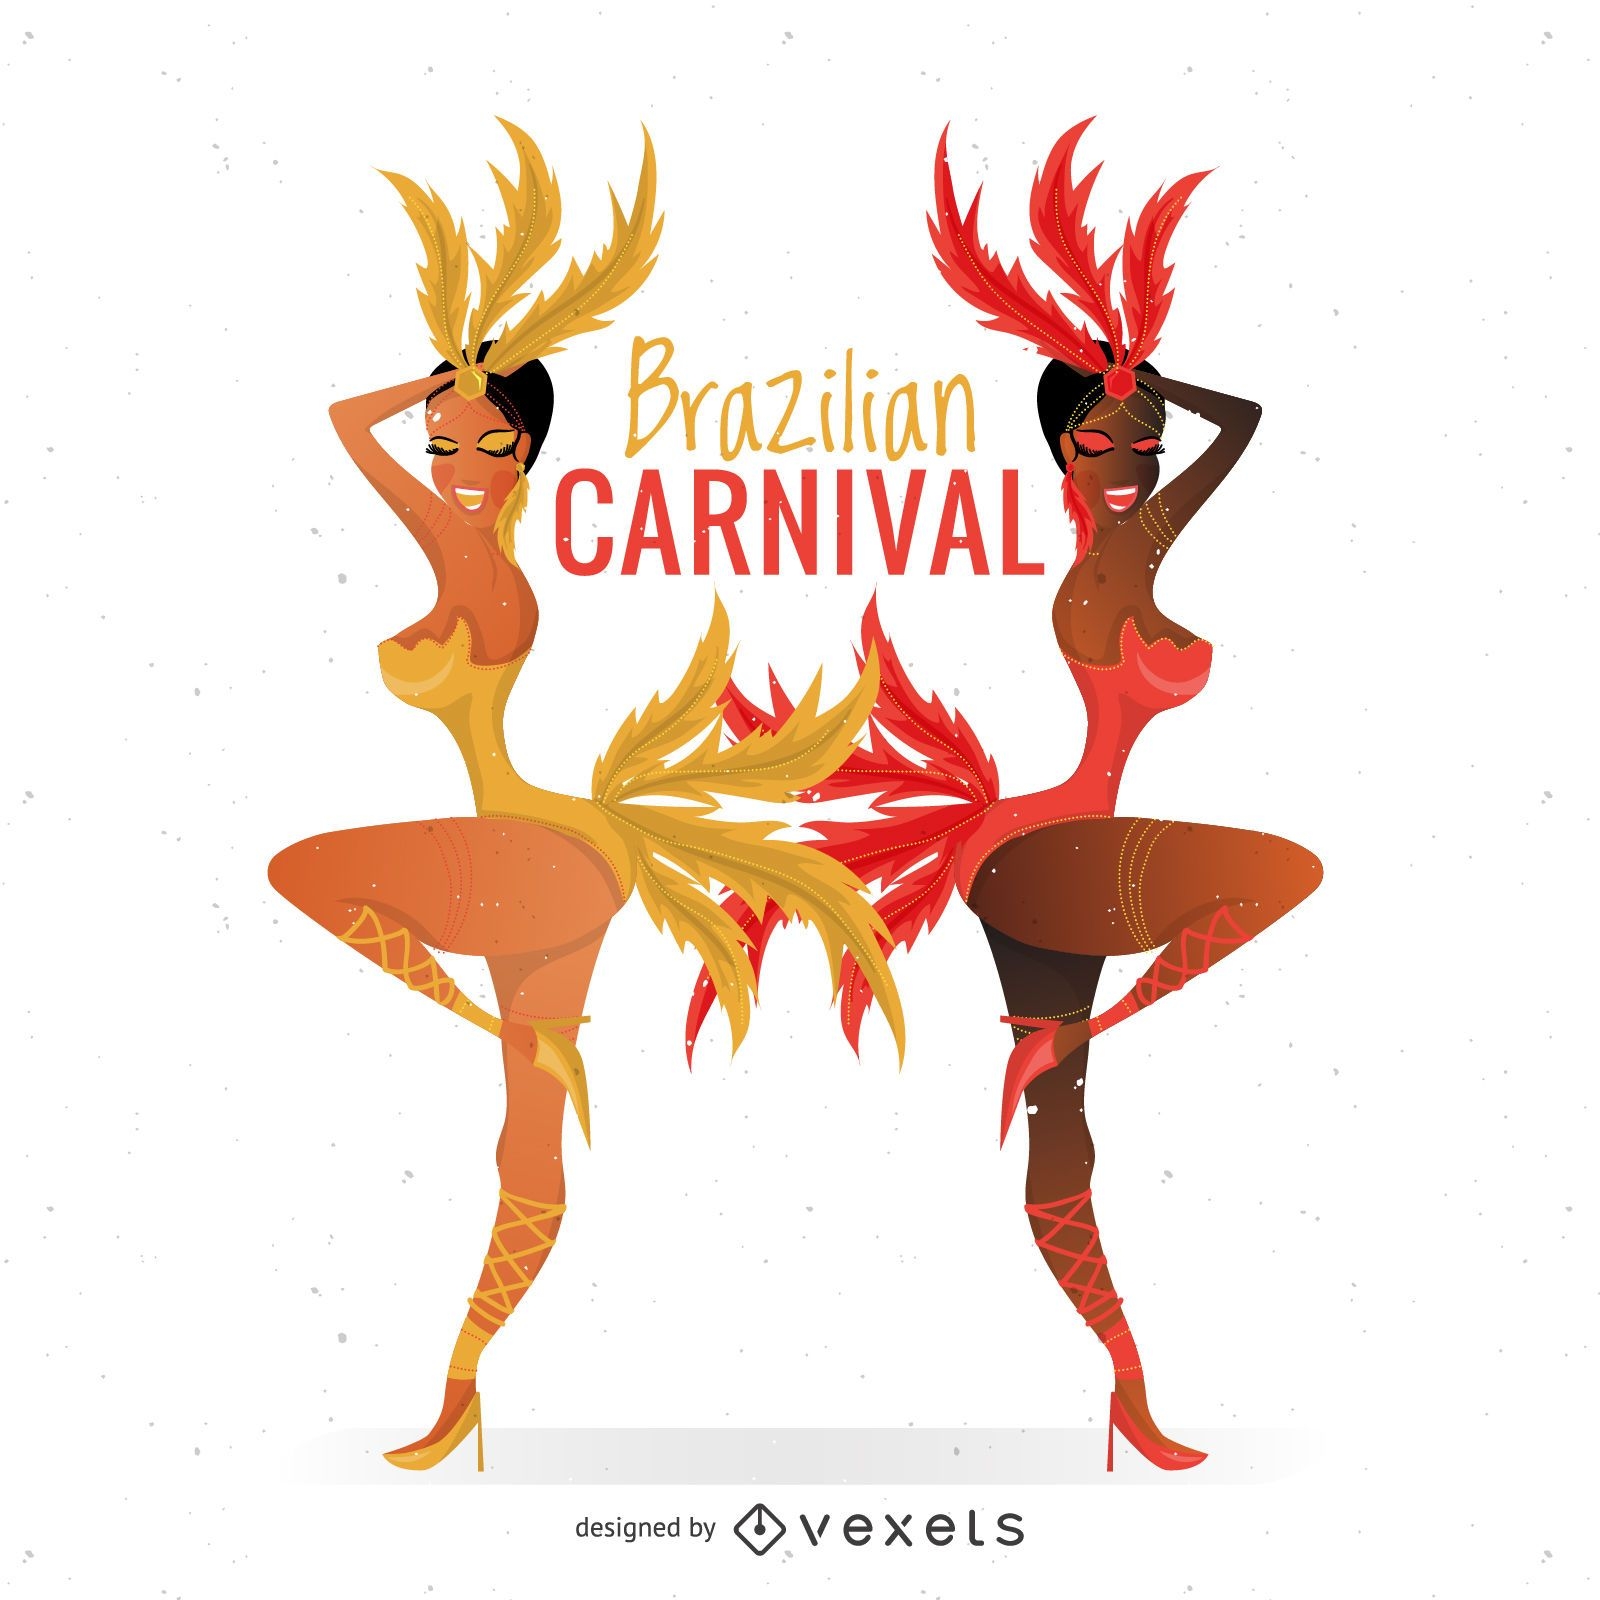 Bailarines de carnaval brasile?o con plumas